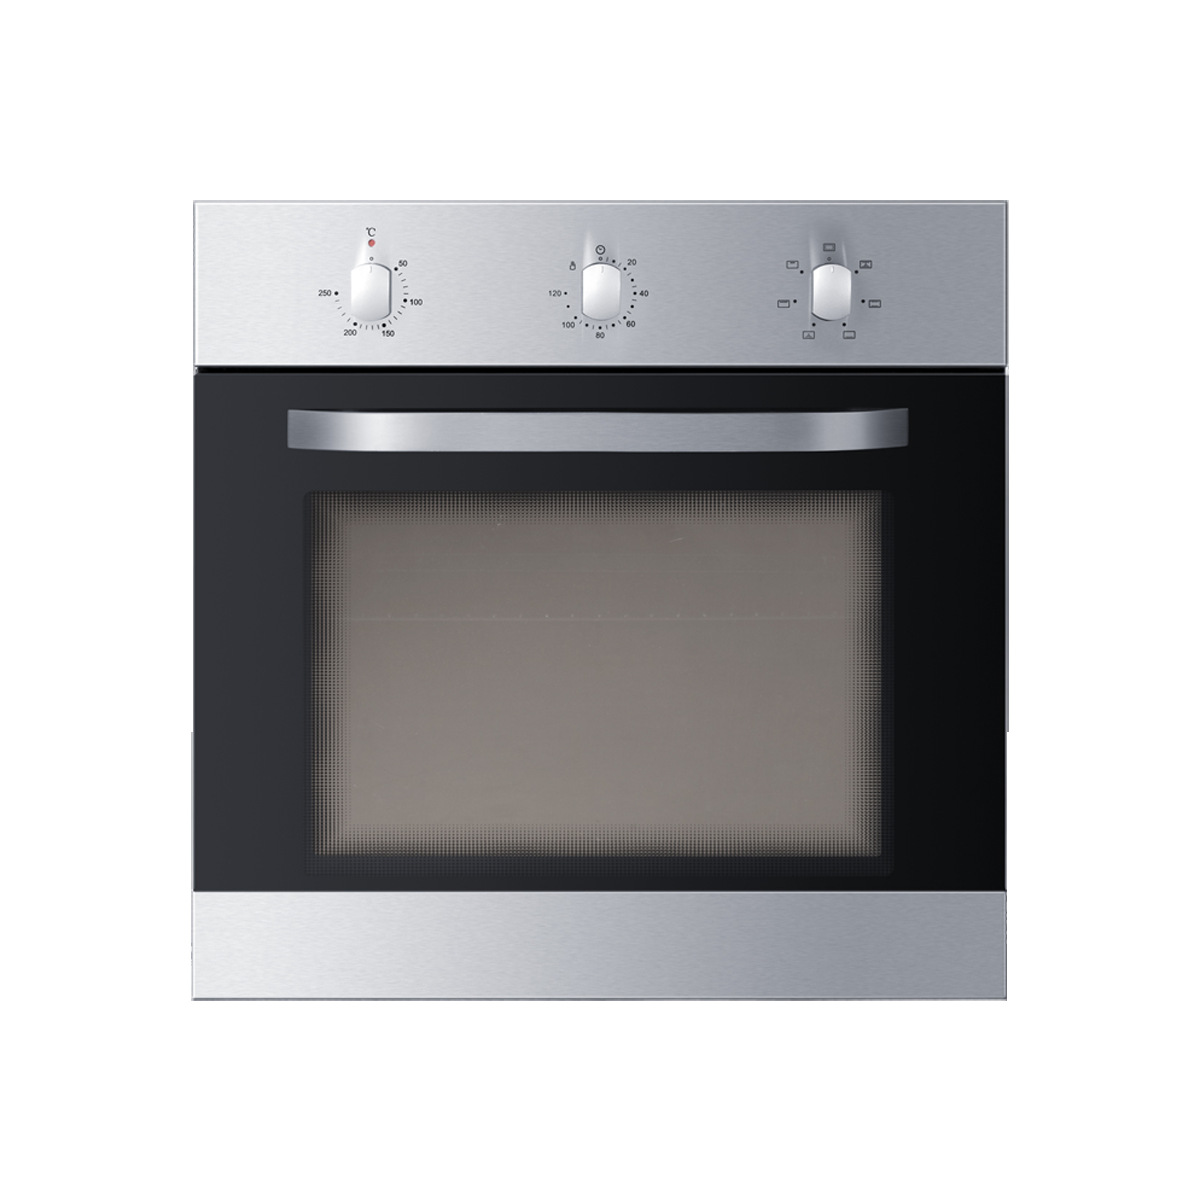 海尔电烤箱OBK600-6S全玻璃内门对流风扇无